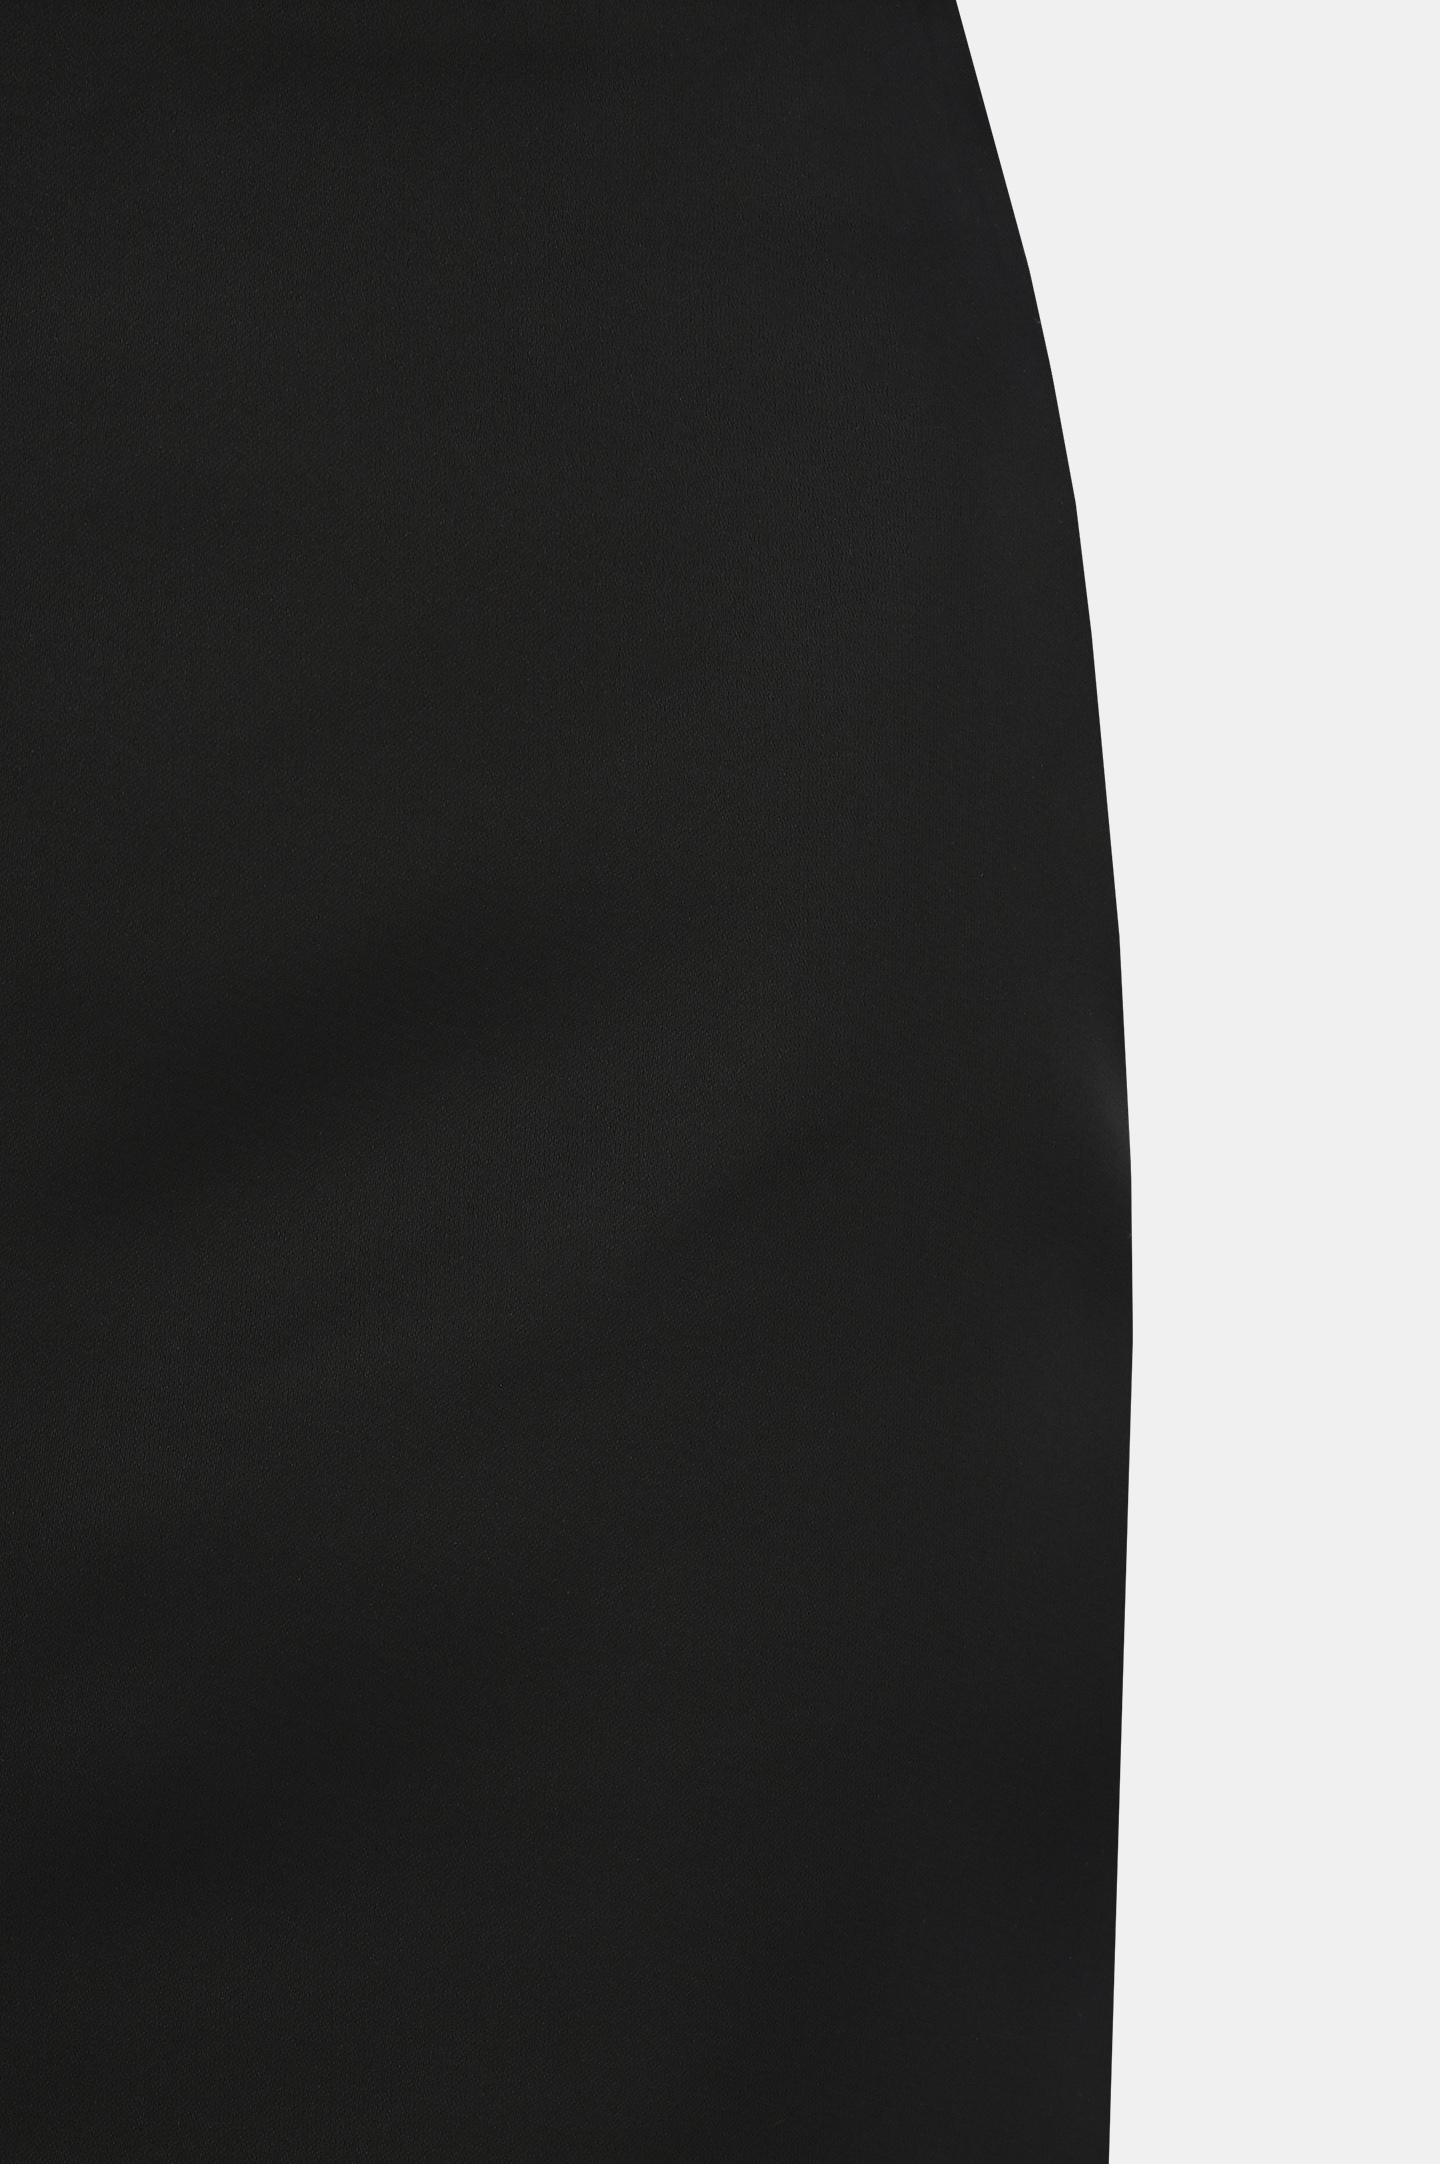 Юбка из полиэстера PHILOSOPHY DI LORENZO SERAFINI J0107 723 , цвет: Черный, Женский